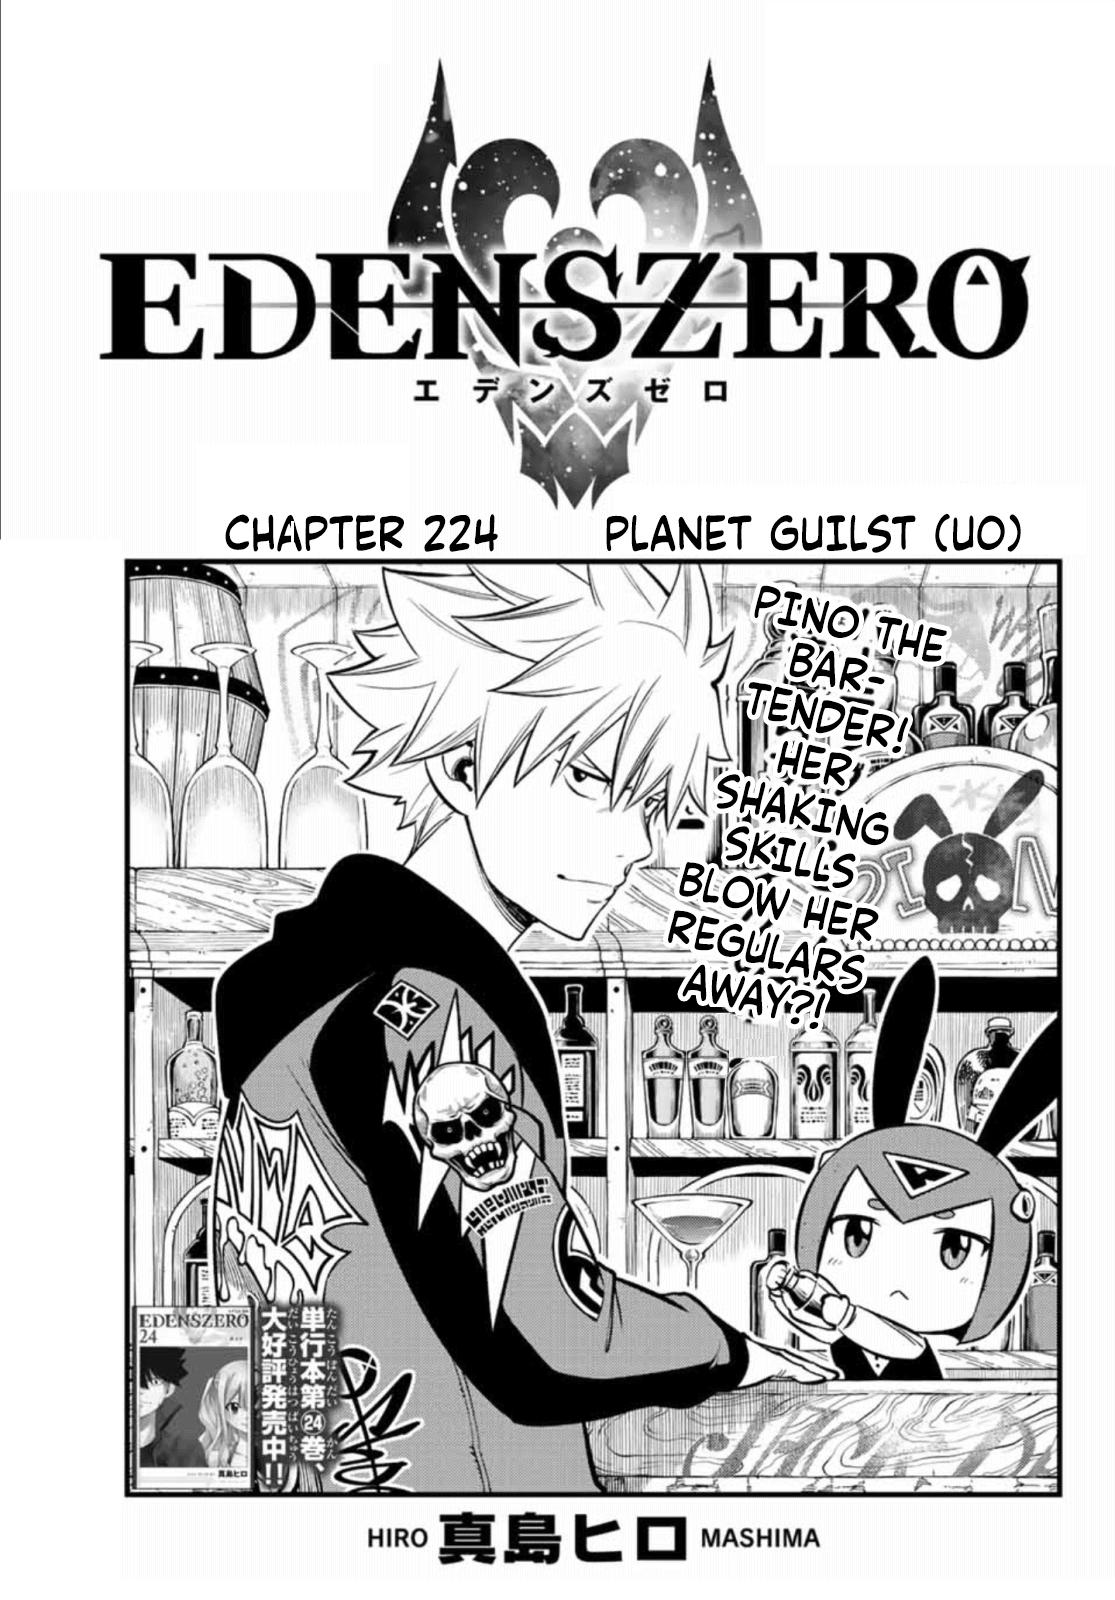 Edens Zero Chapter 224 image 01